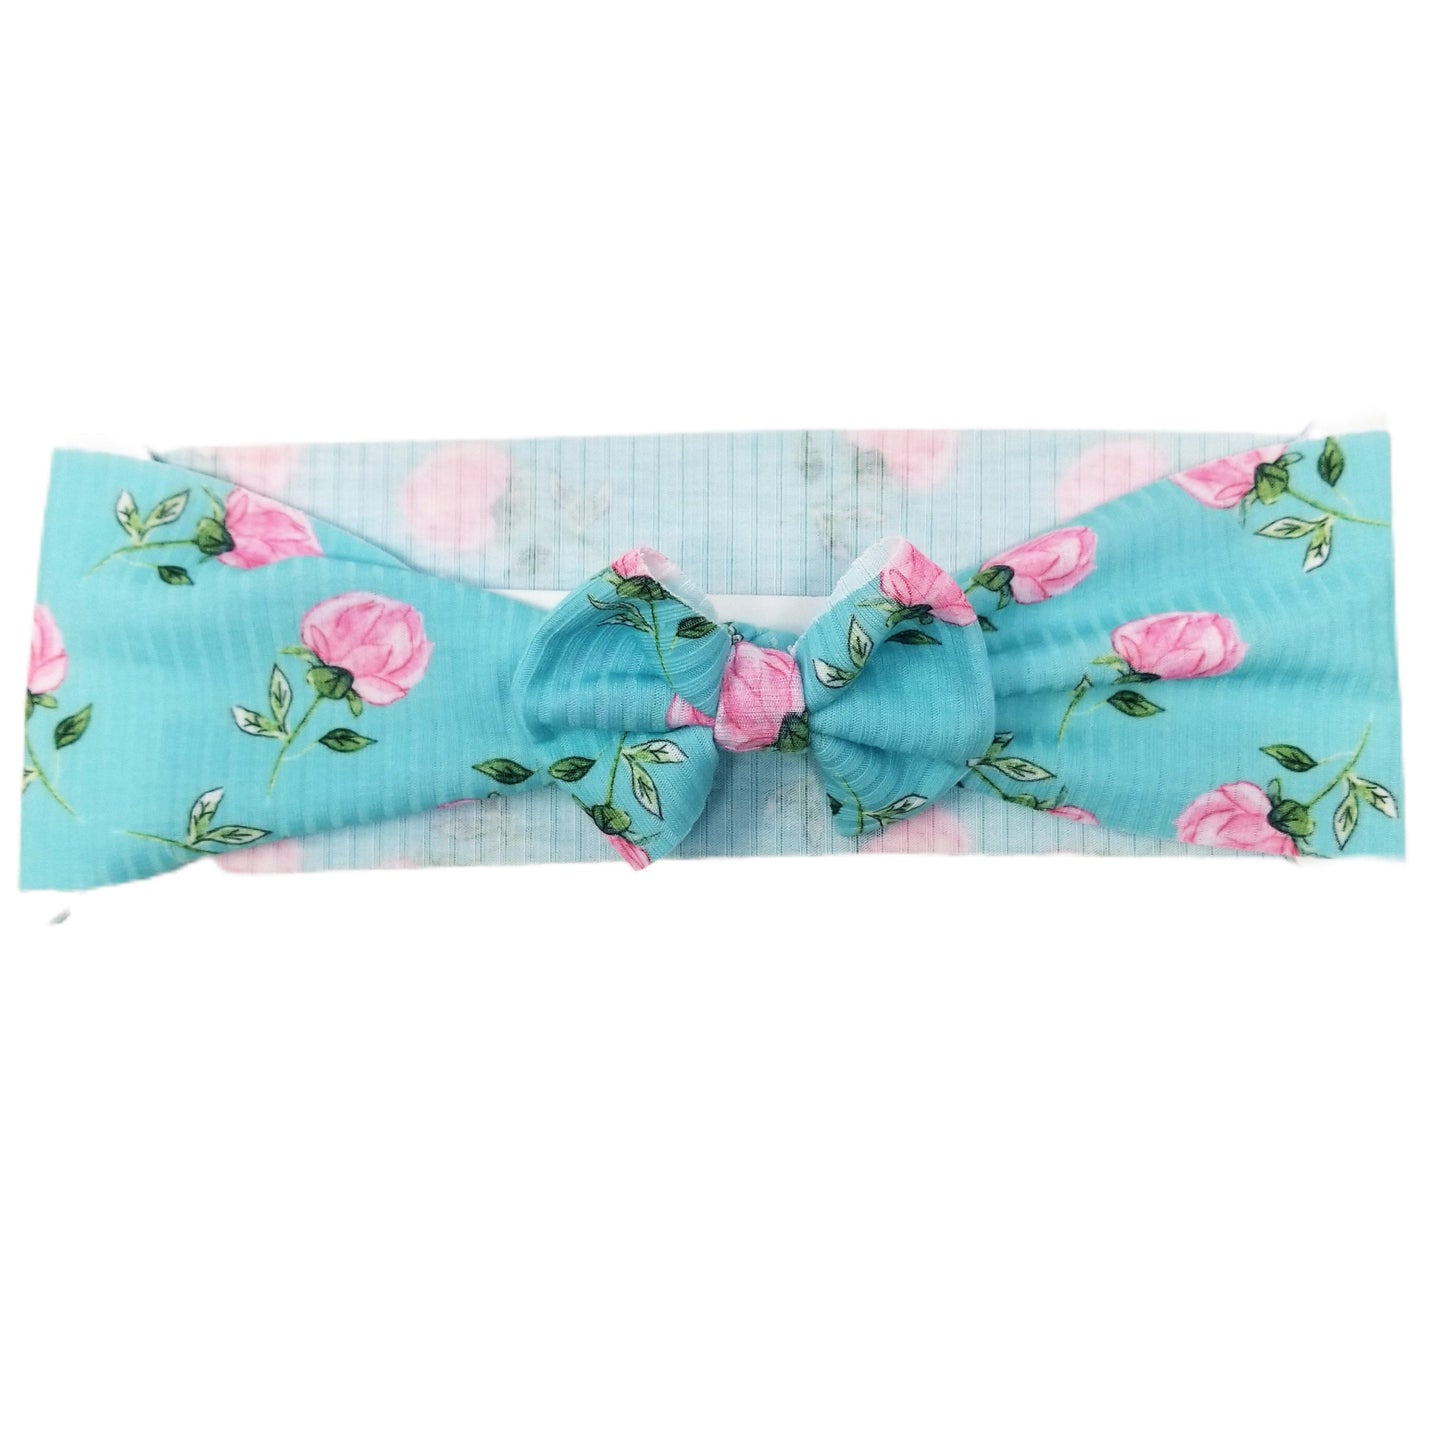 Budding Floral Rib Knit Fabric Bow Headwrap 3"